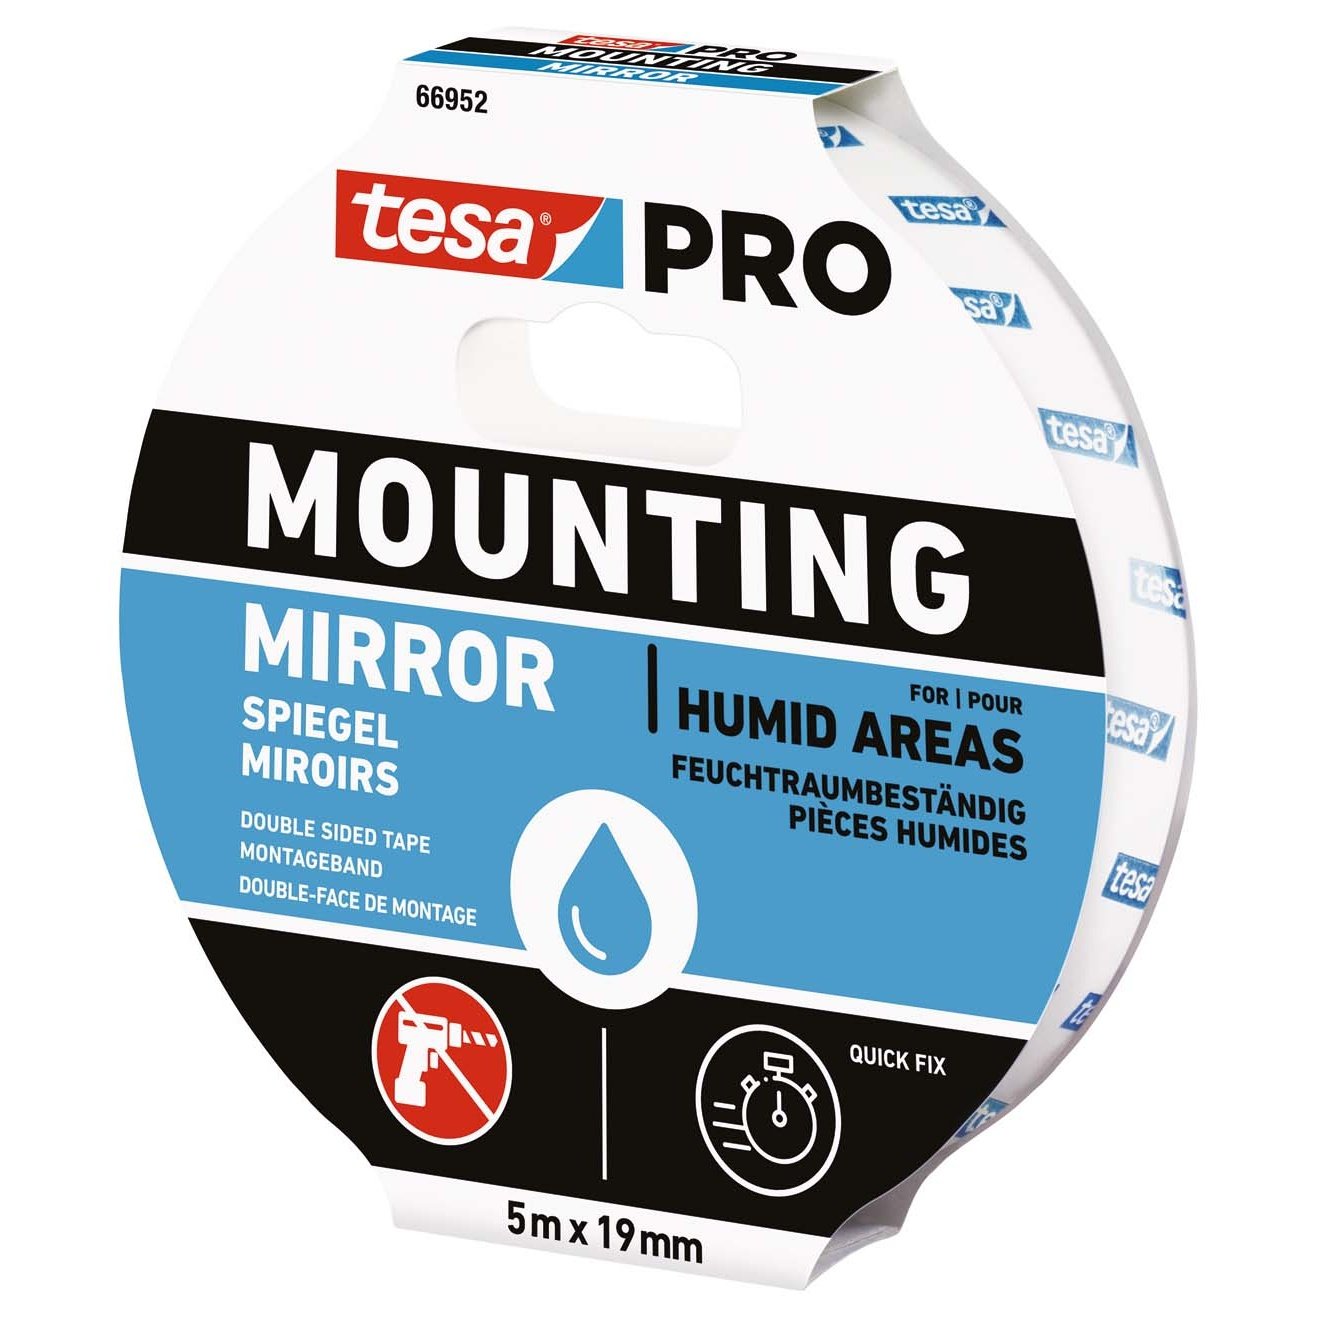 Monteringstejp PRO Spegel Tesa - 5 meter